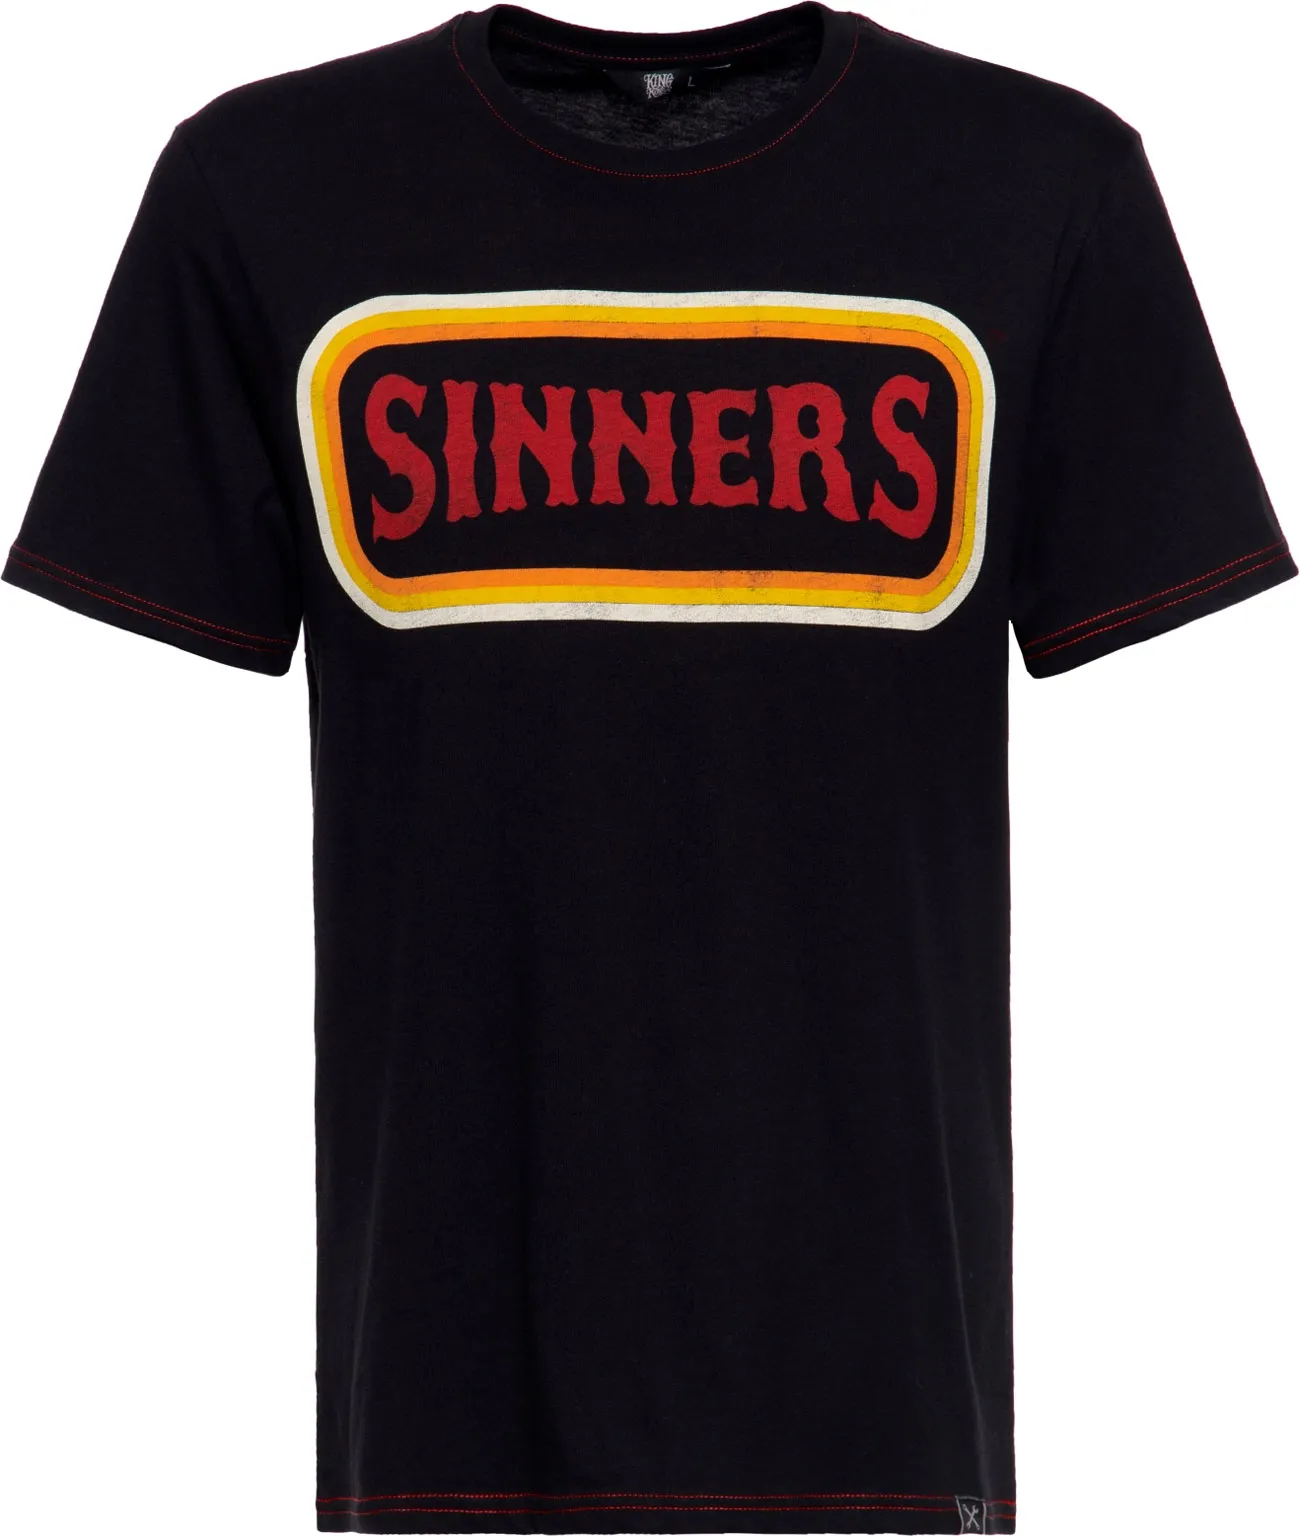 King Kerosin Sinners F*ck You All, t-shirt - Noir/Rouge/Jaune - M